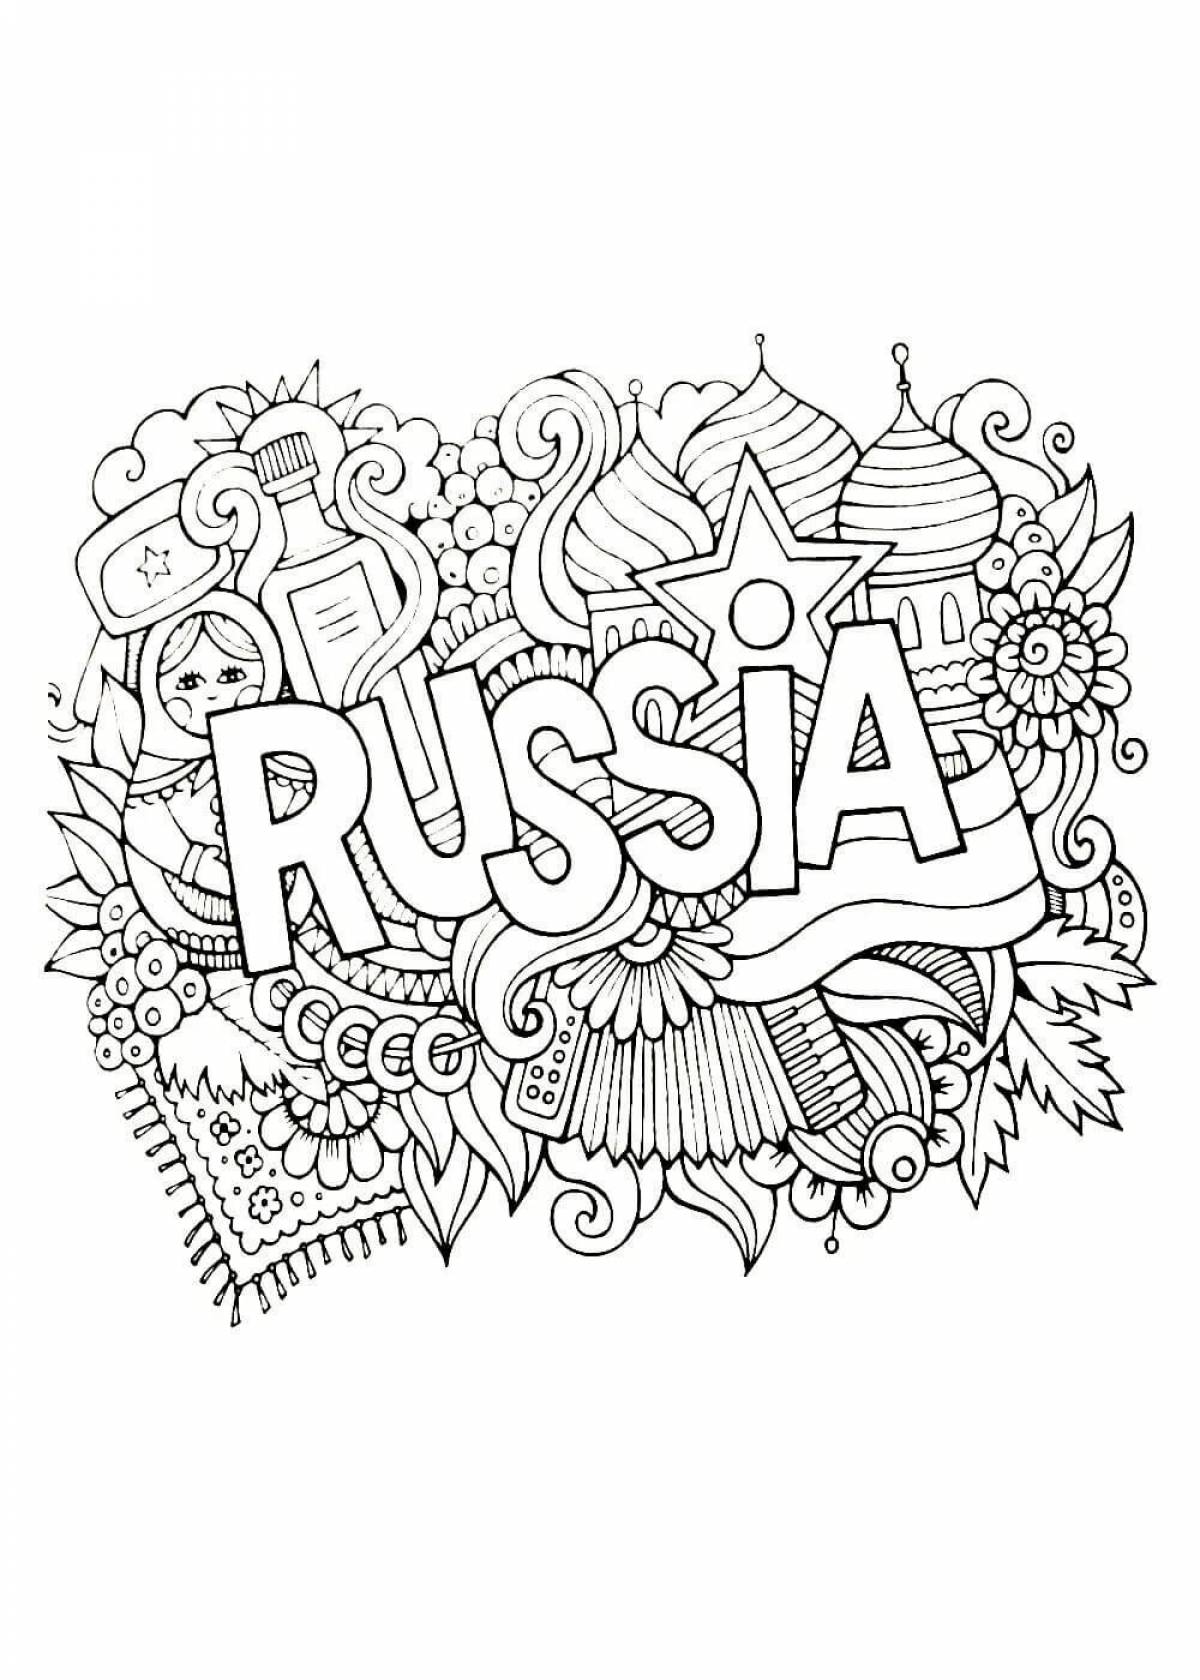 Скачать и распечатать раскраски Россия